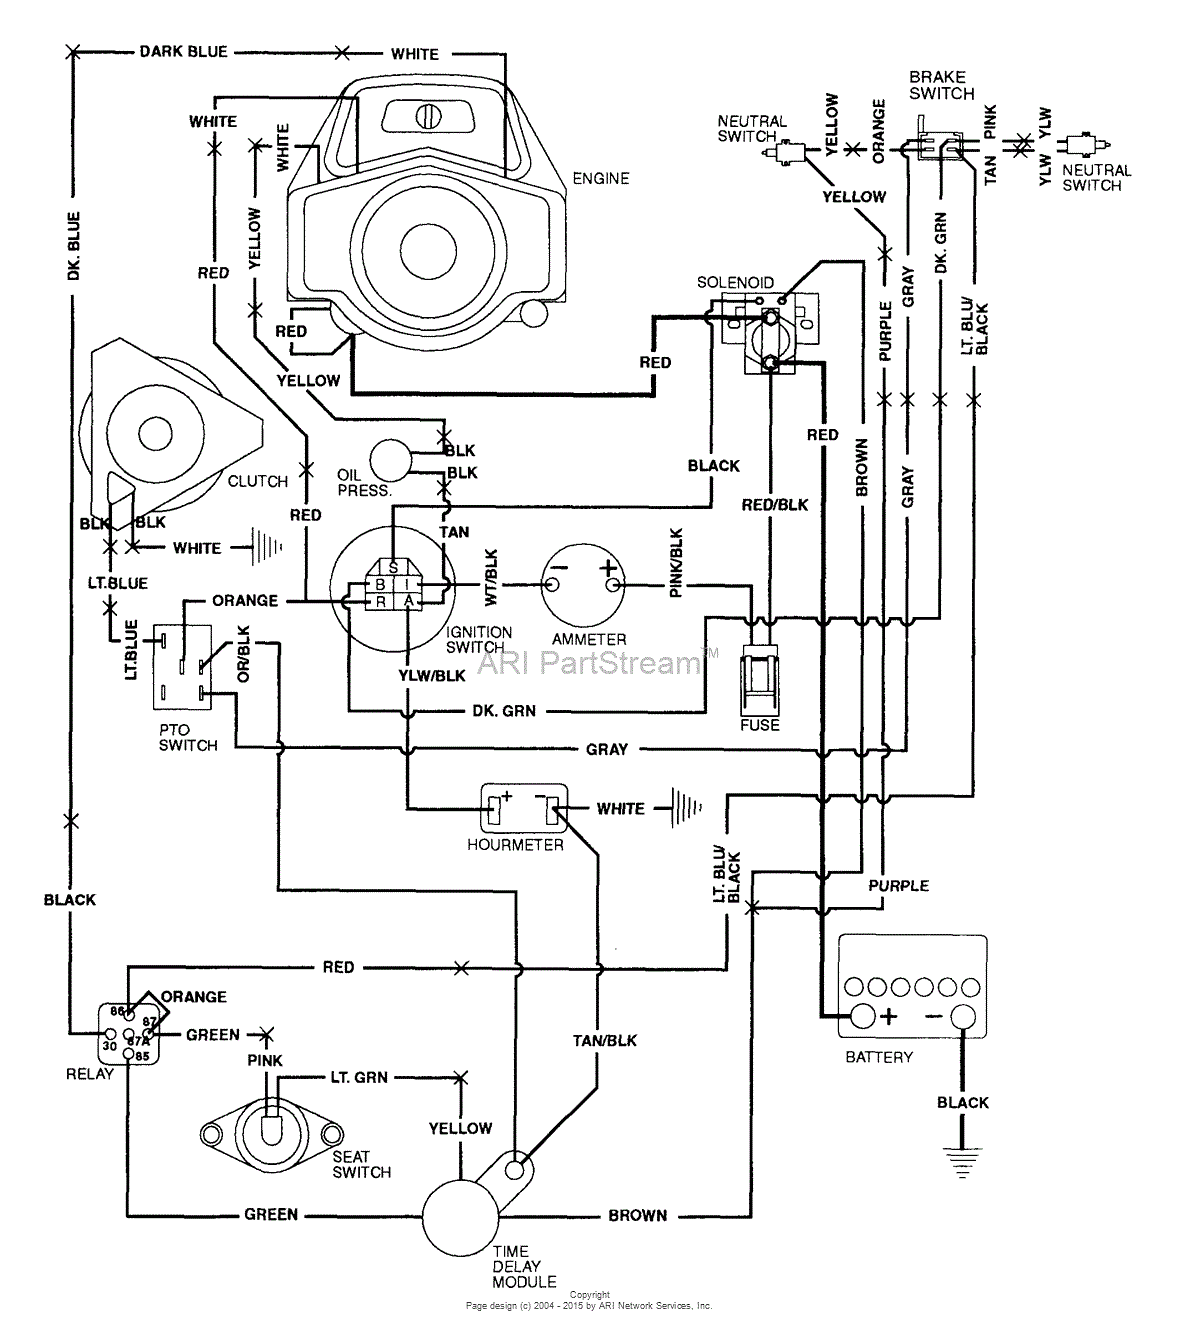 Wiring Diagram For Onan 4bgefa26100p onan engine wiring diagram all 